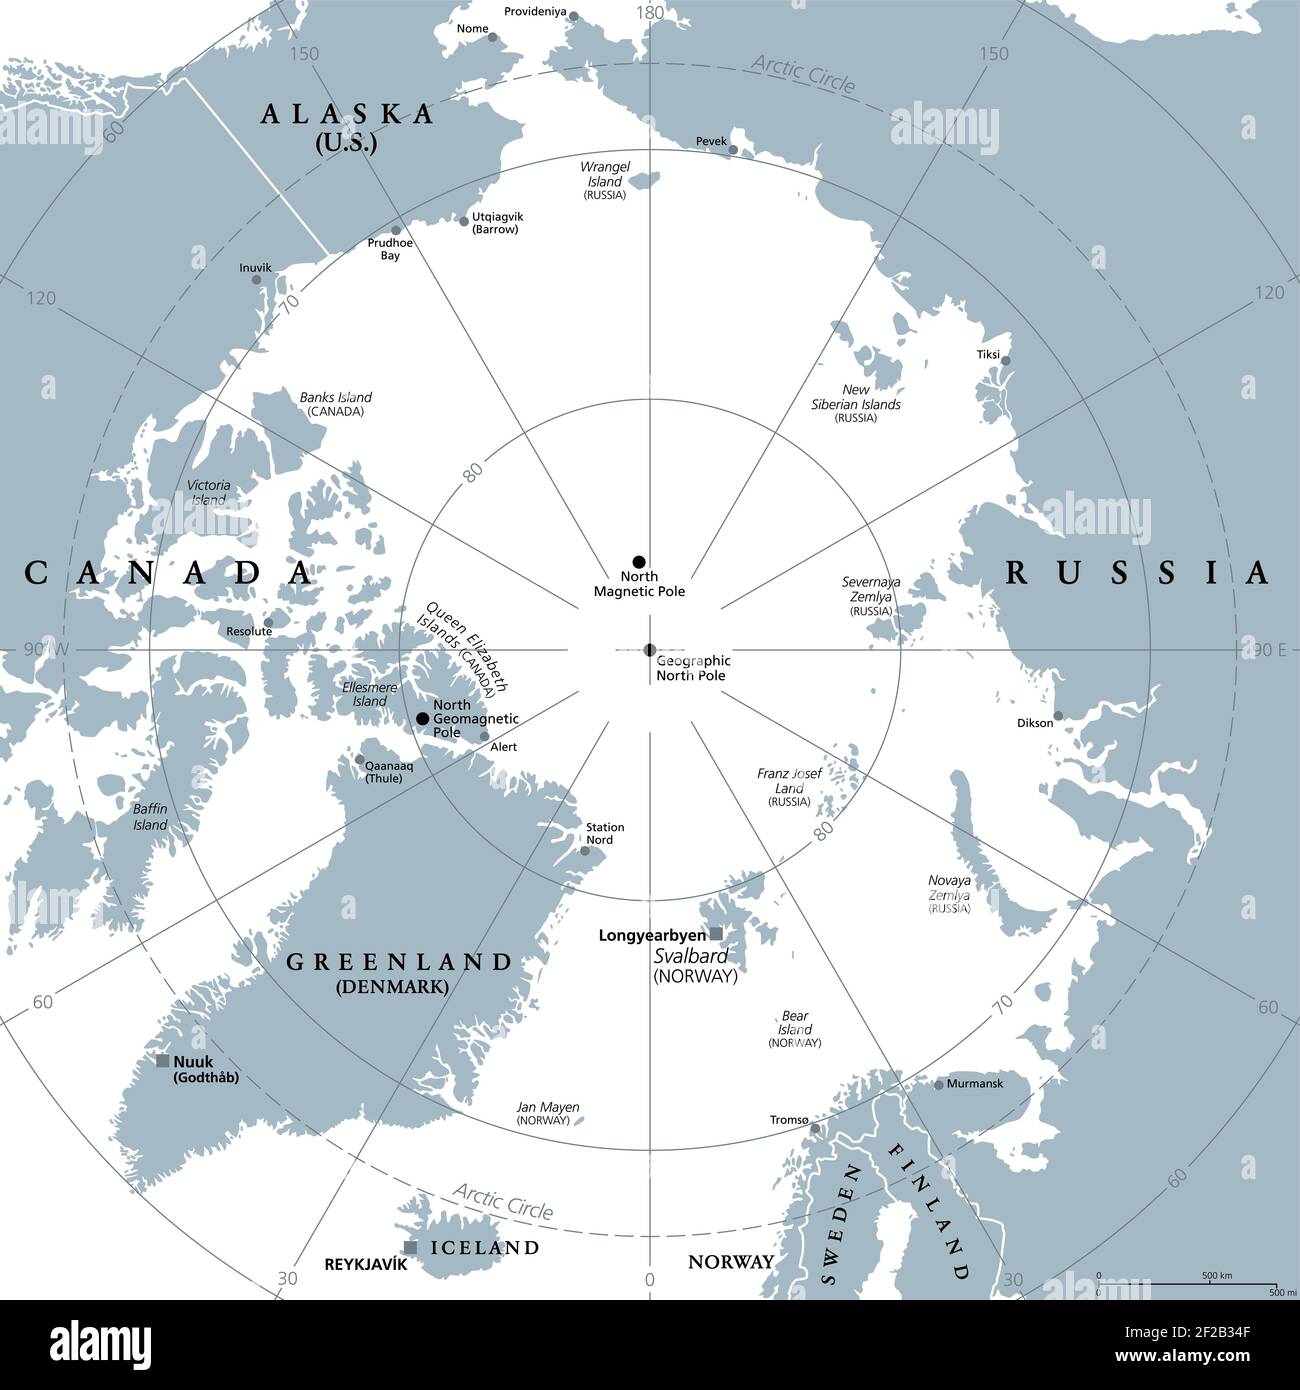 Région arctique, carte politique grise. Région polaire autour du pôle Nord de la Terre. Région de l'océan Arctique, avec pôle magnétique nord et pôle géomagnétique nord. Banque D'Images